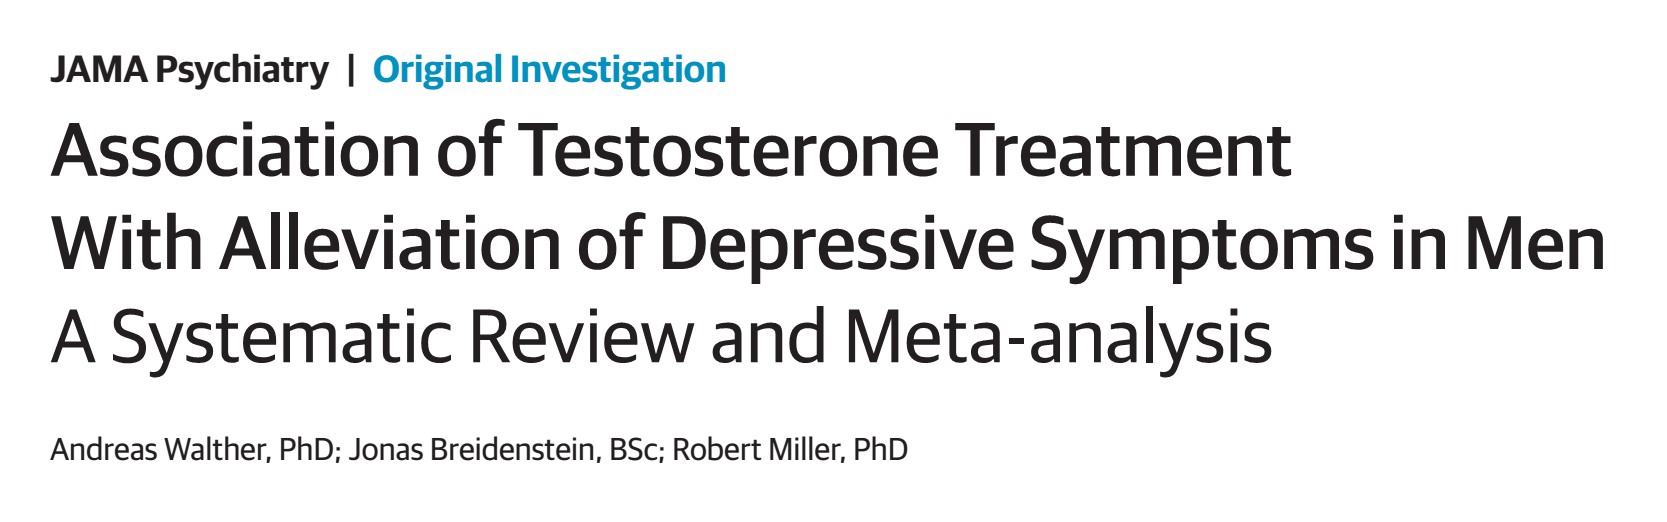 síntomas-depresivos-tratamiento-testosterona